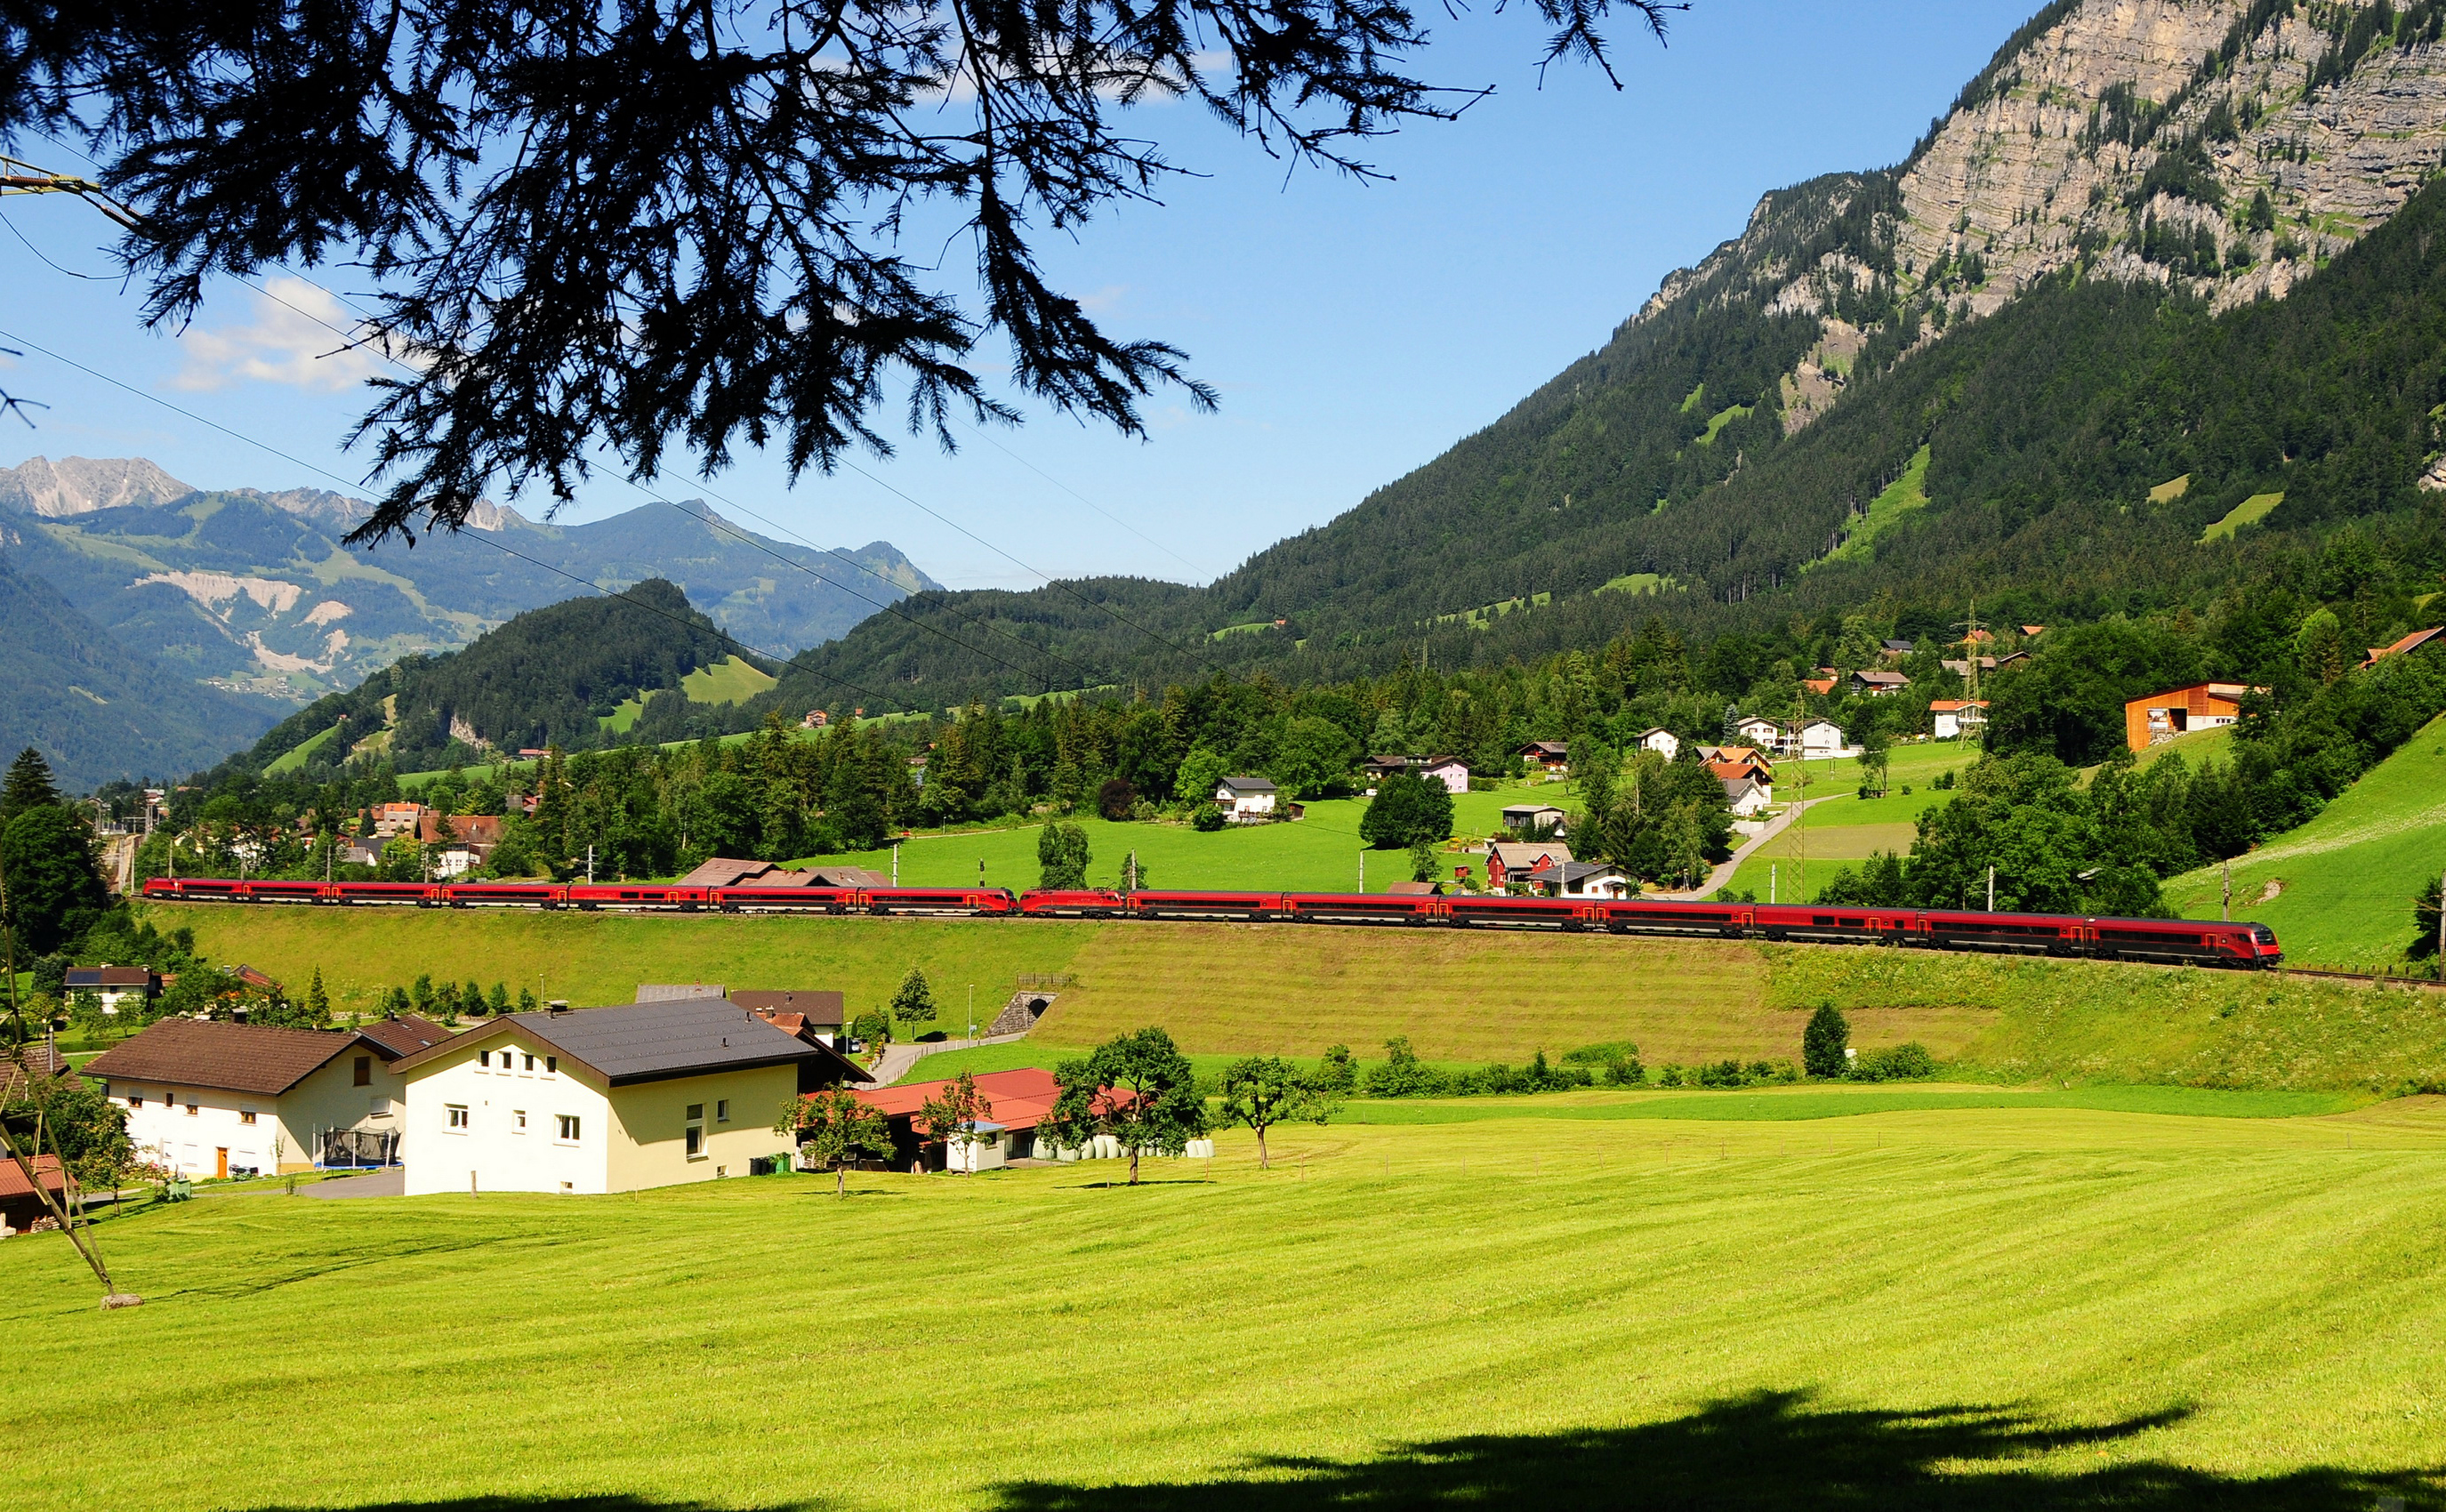 austria, nature, trees, grass, mountains